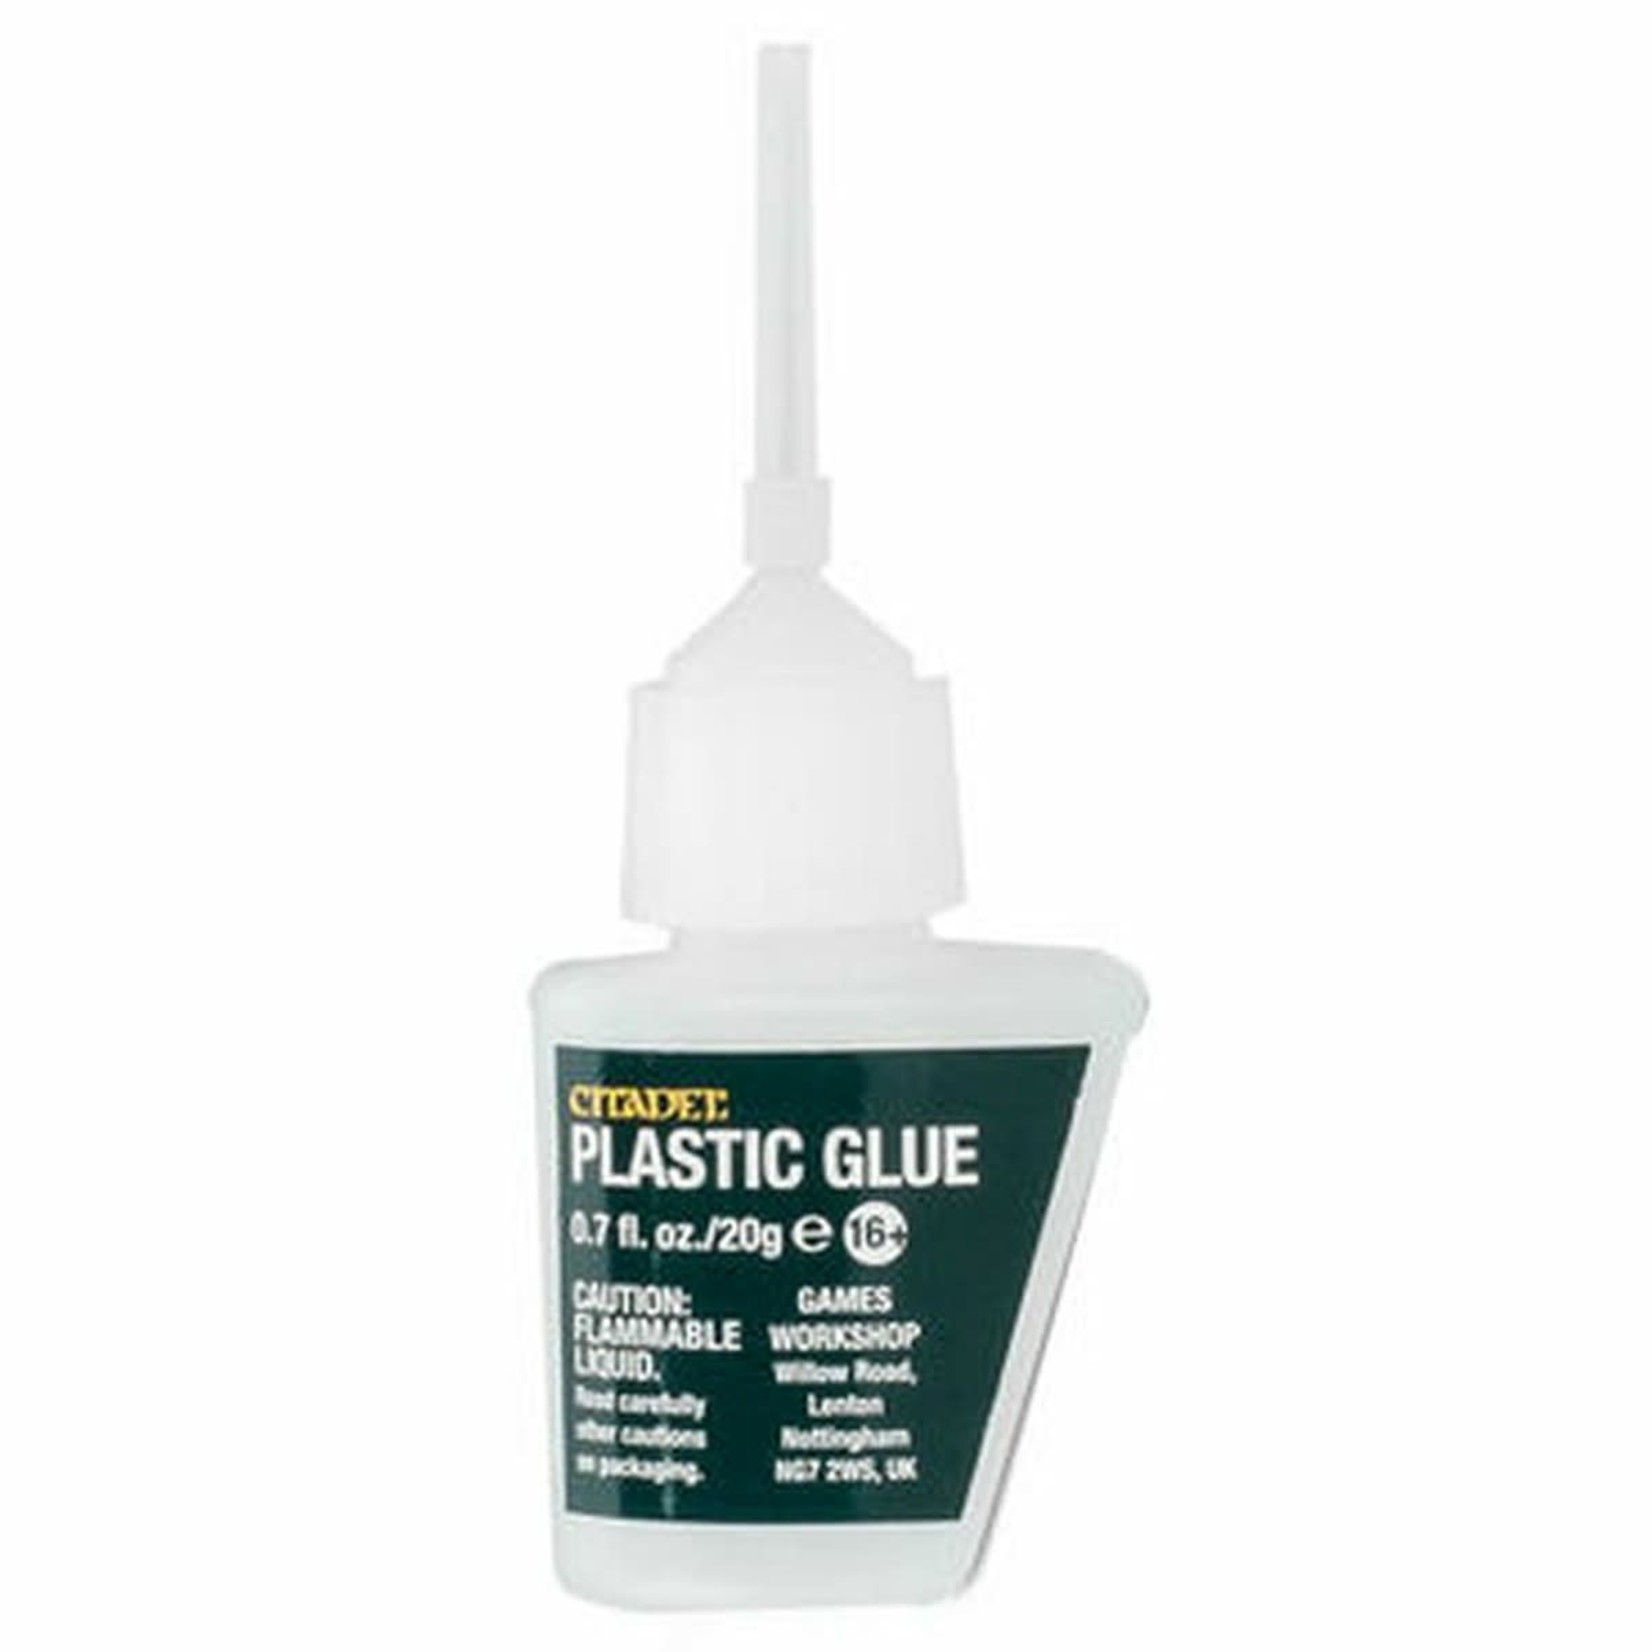 Citadel Citadel: Plastic Glue